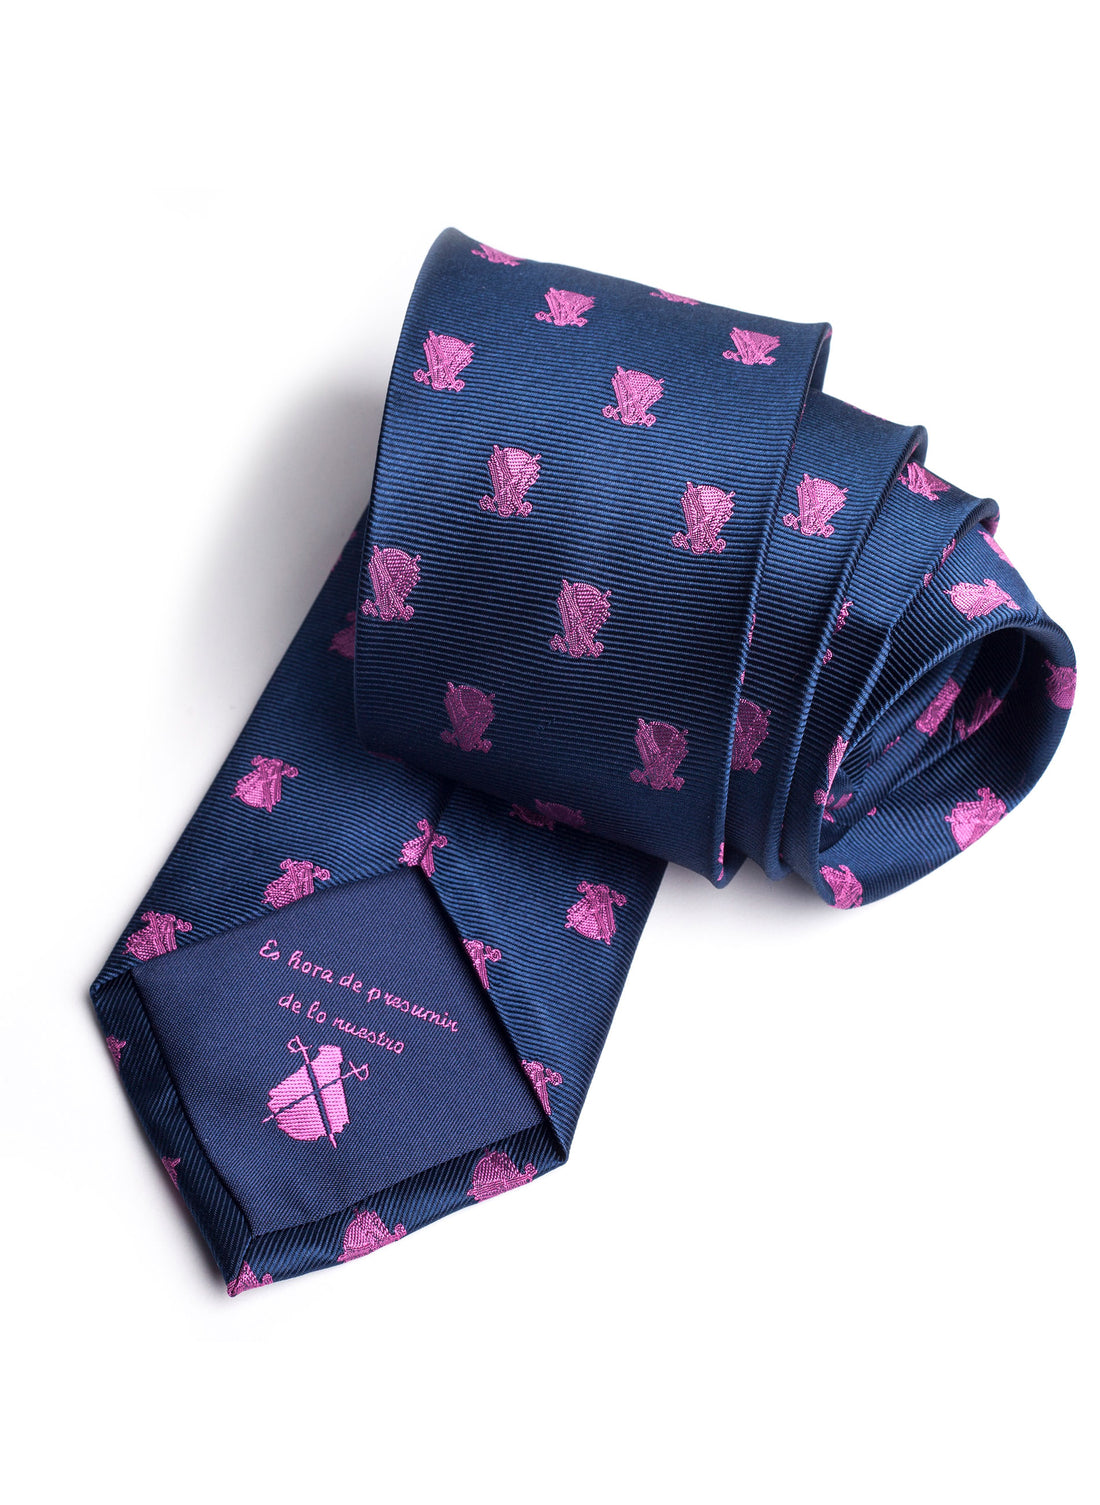 Blauwe stropdas met roze capotes